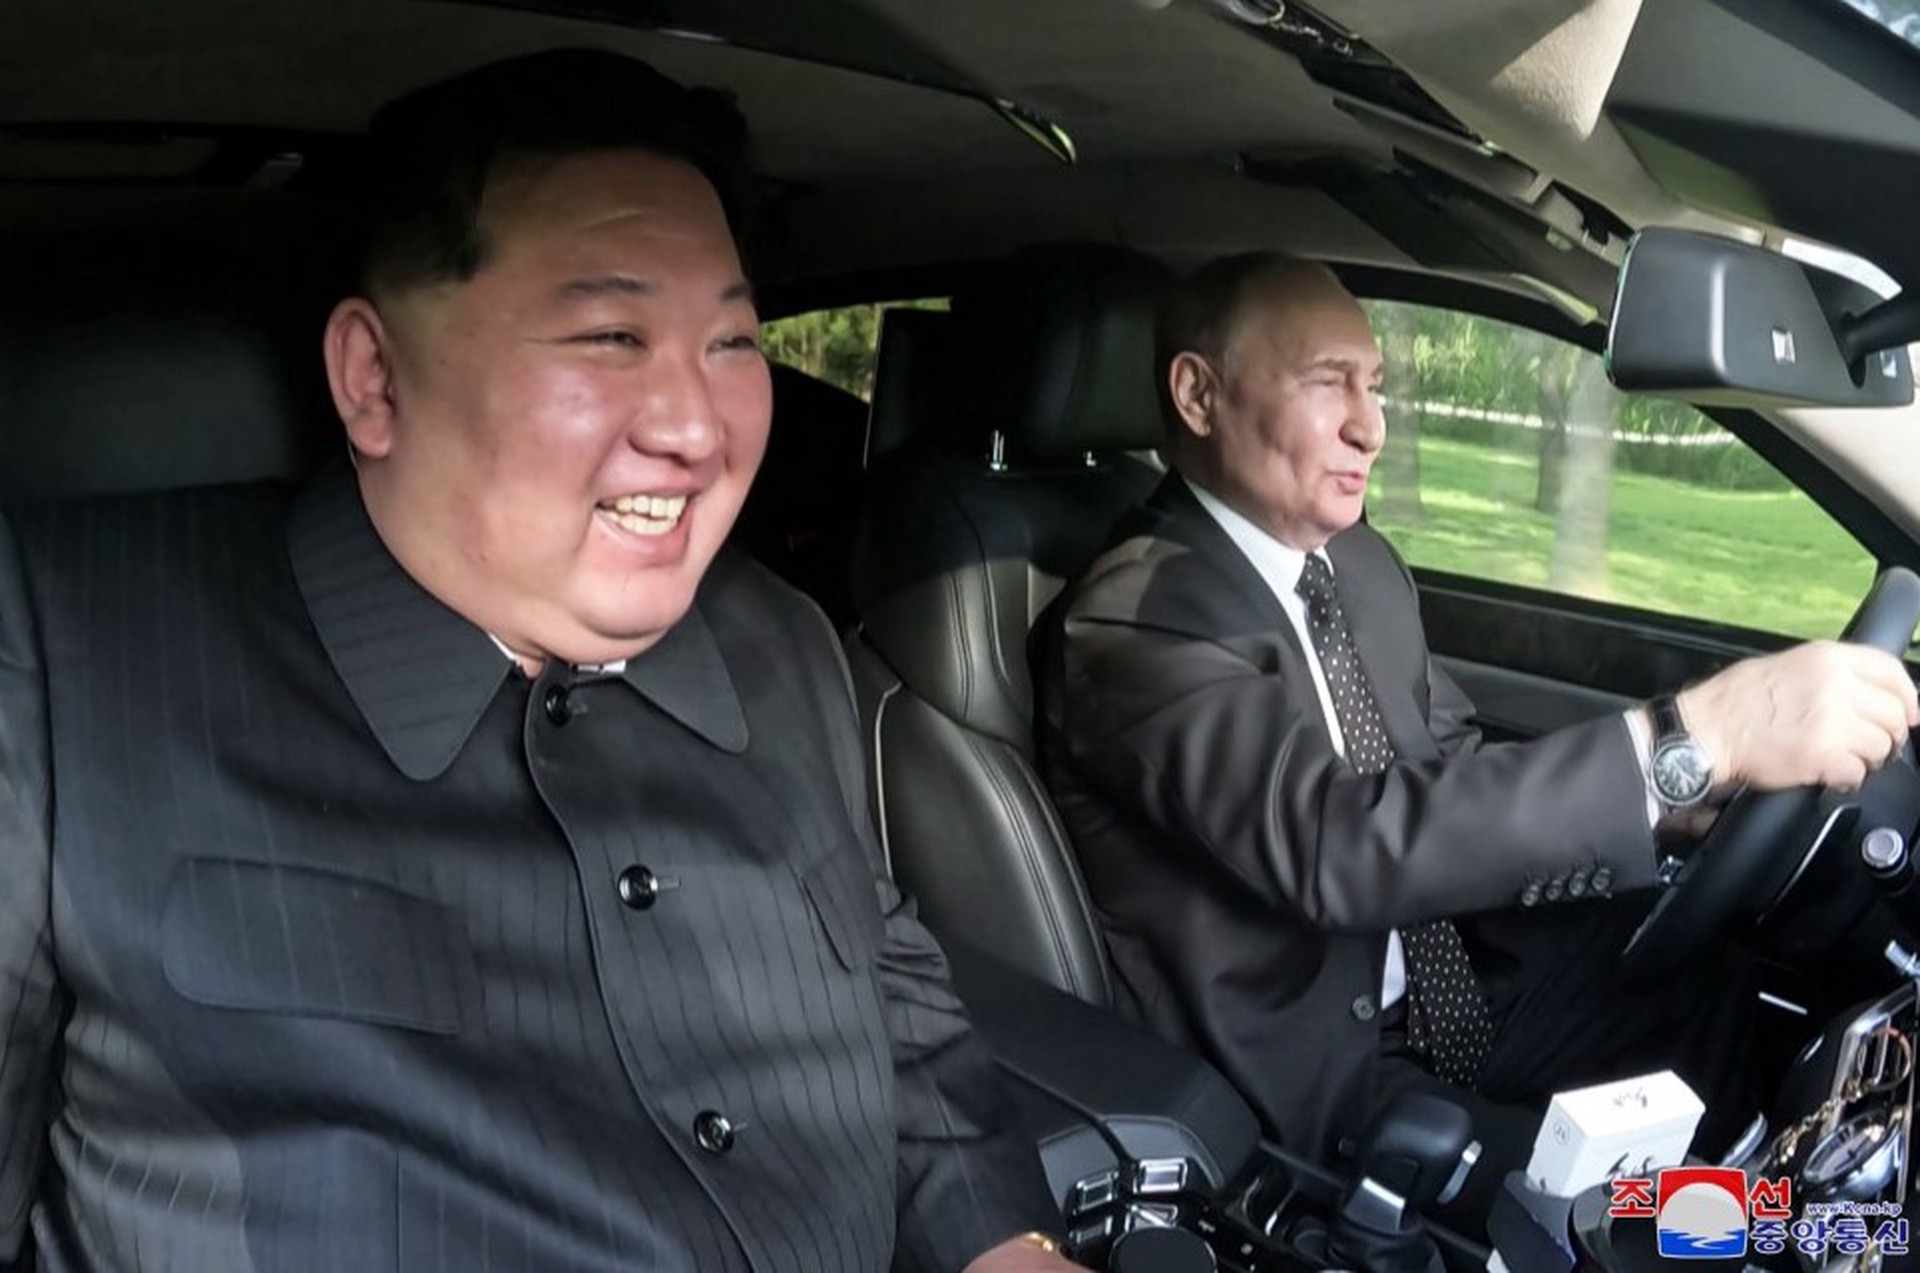 ЦТАК опубликовало кадры с Путиным и Ким Чен Ыном в салоне Aurus